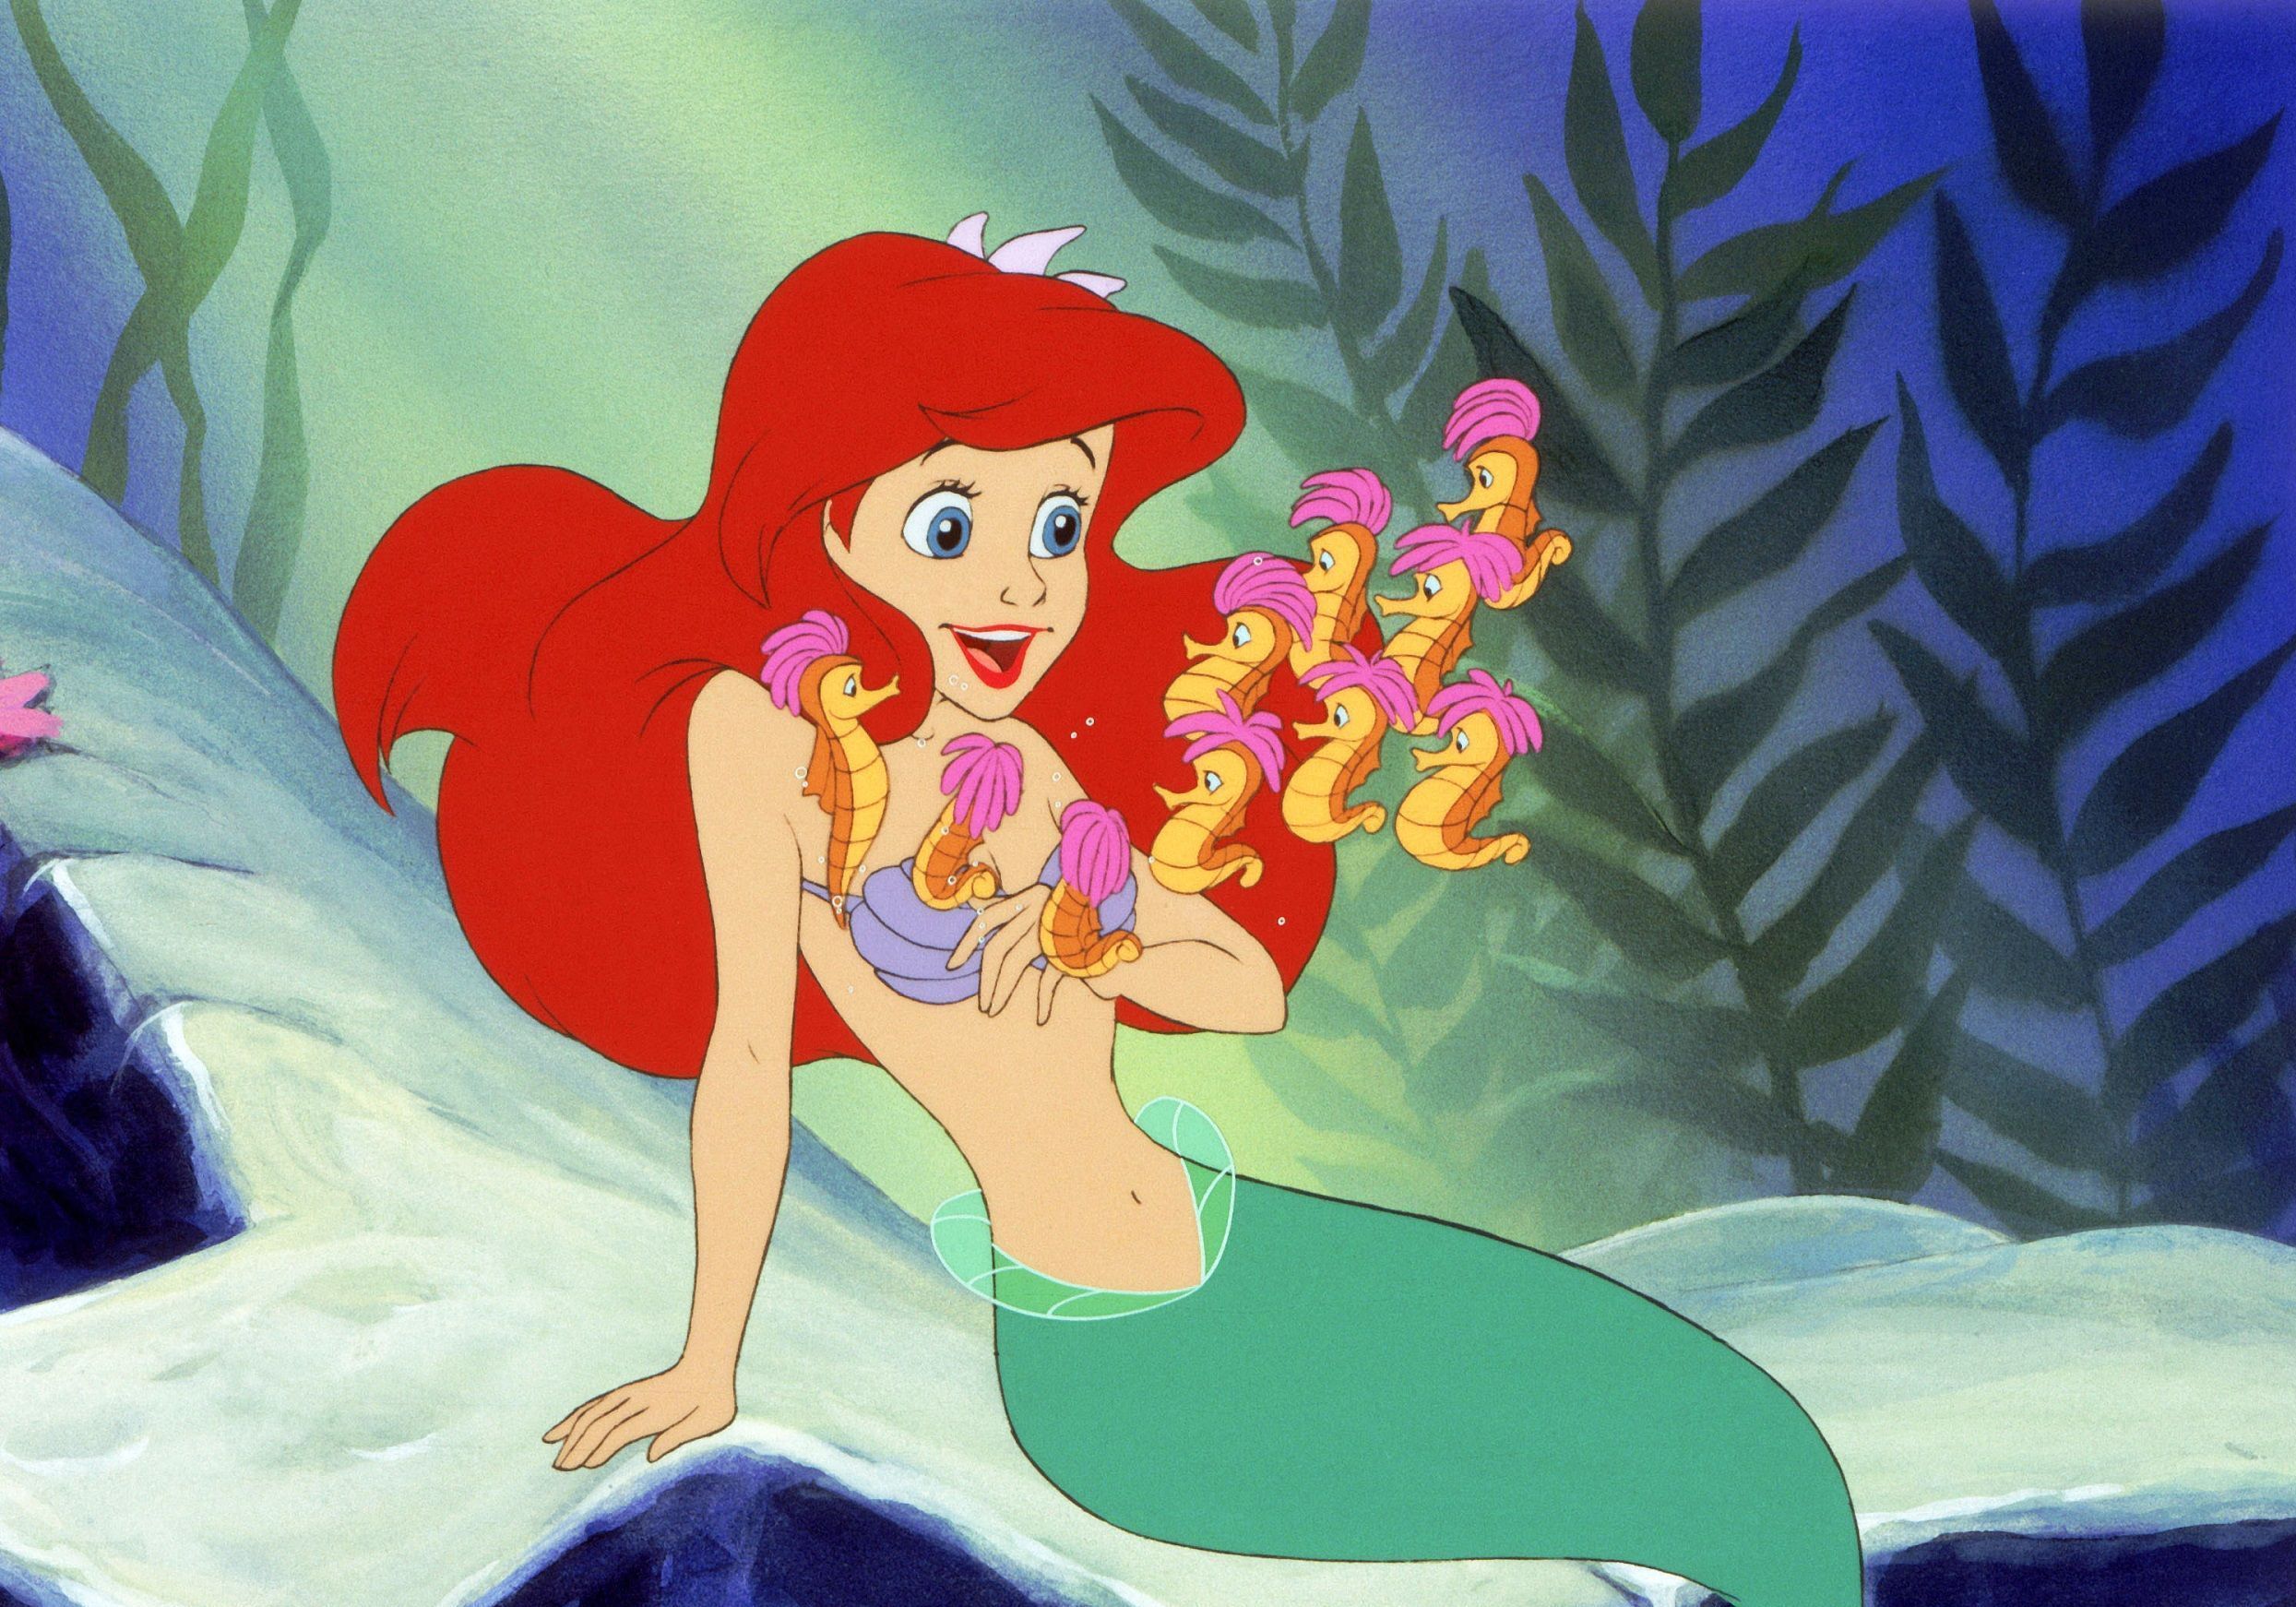 Disney : La petite sirène, princesse badass ou dessin animé